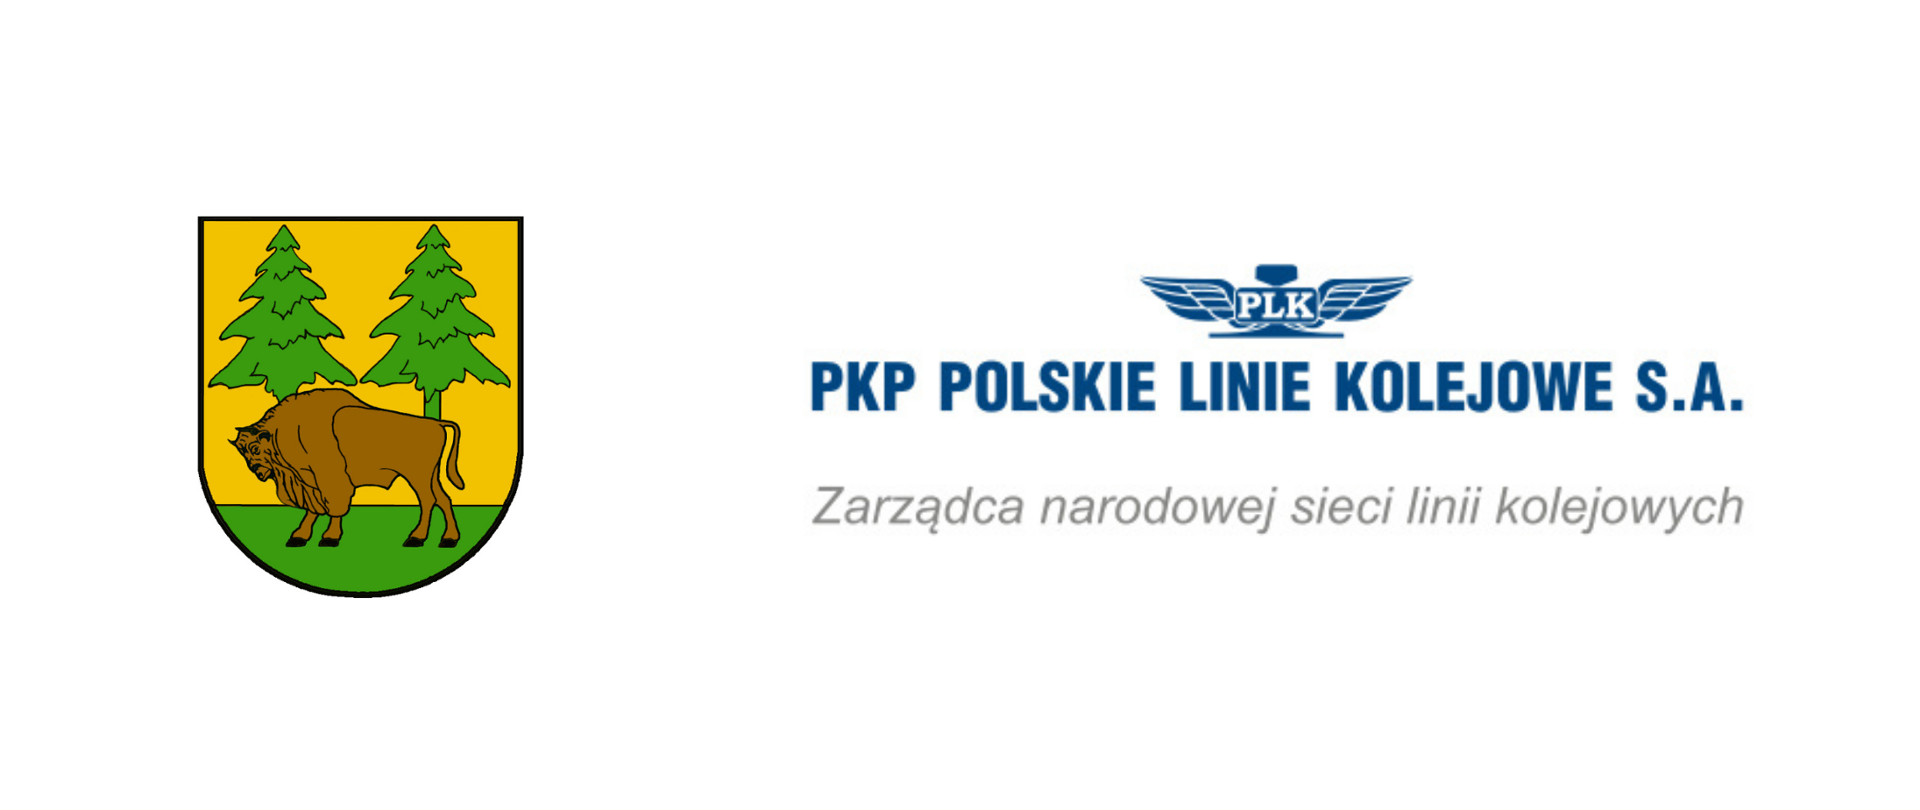 Logotypy: herb Powiatu Hajnowskiego i PKP Polskie Linie Kolejowe - Zarządcy narodowej sieci linii kolejowych